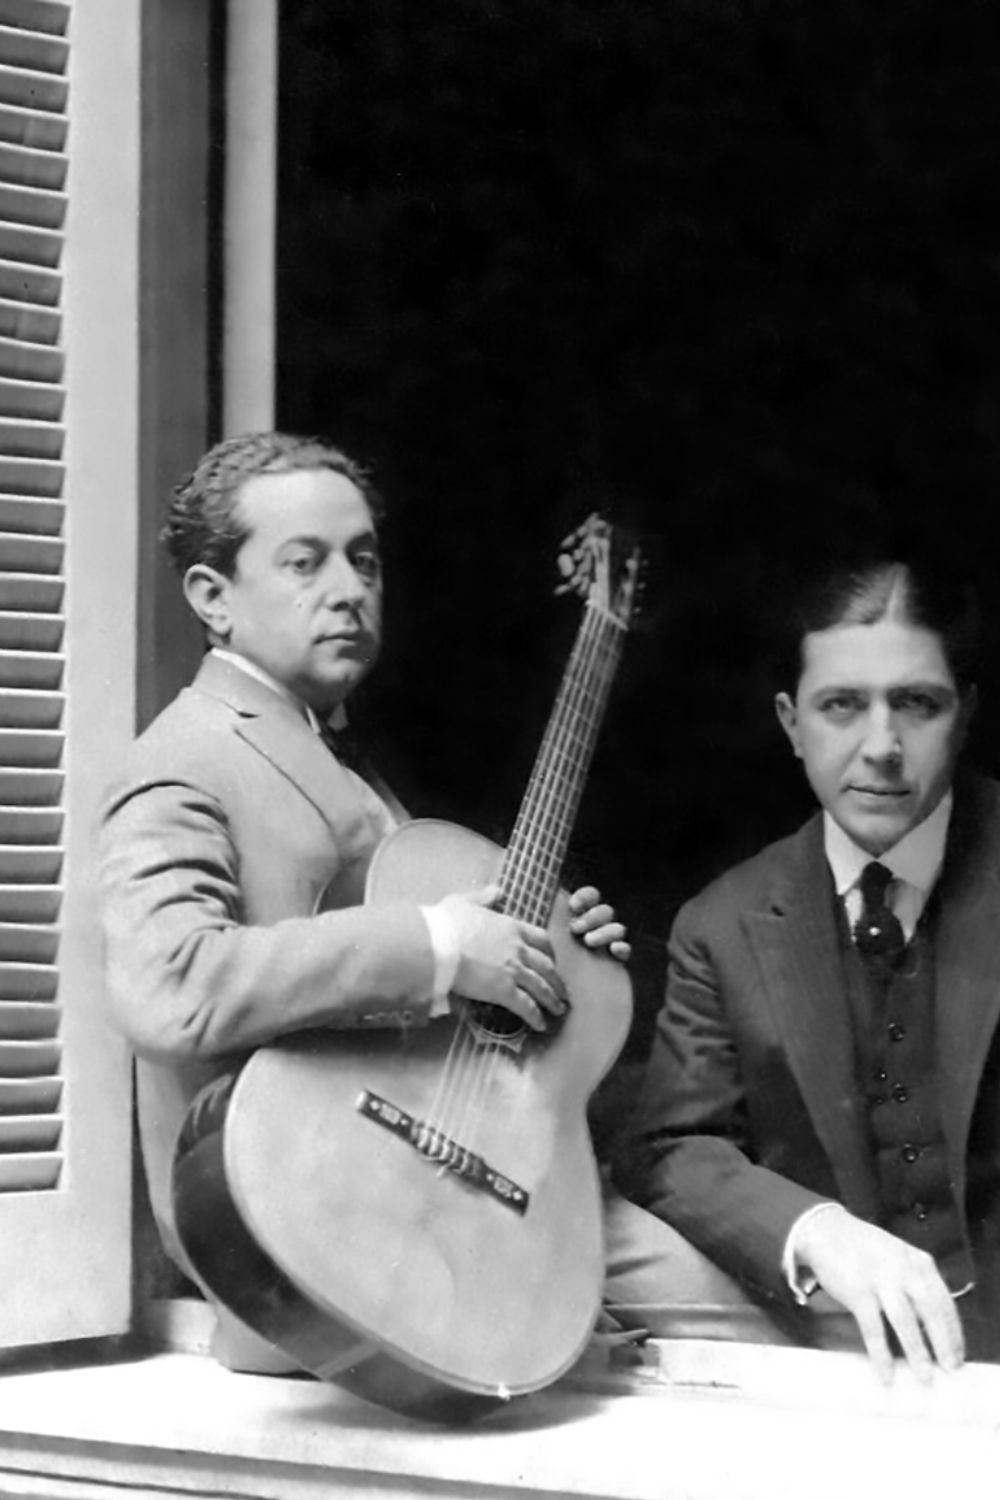 José Razzano, Argentine Tango musician and composer, with Gardel in 1926.